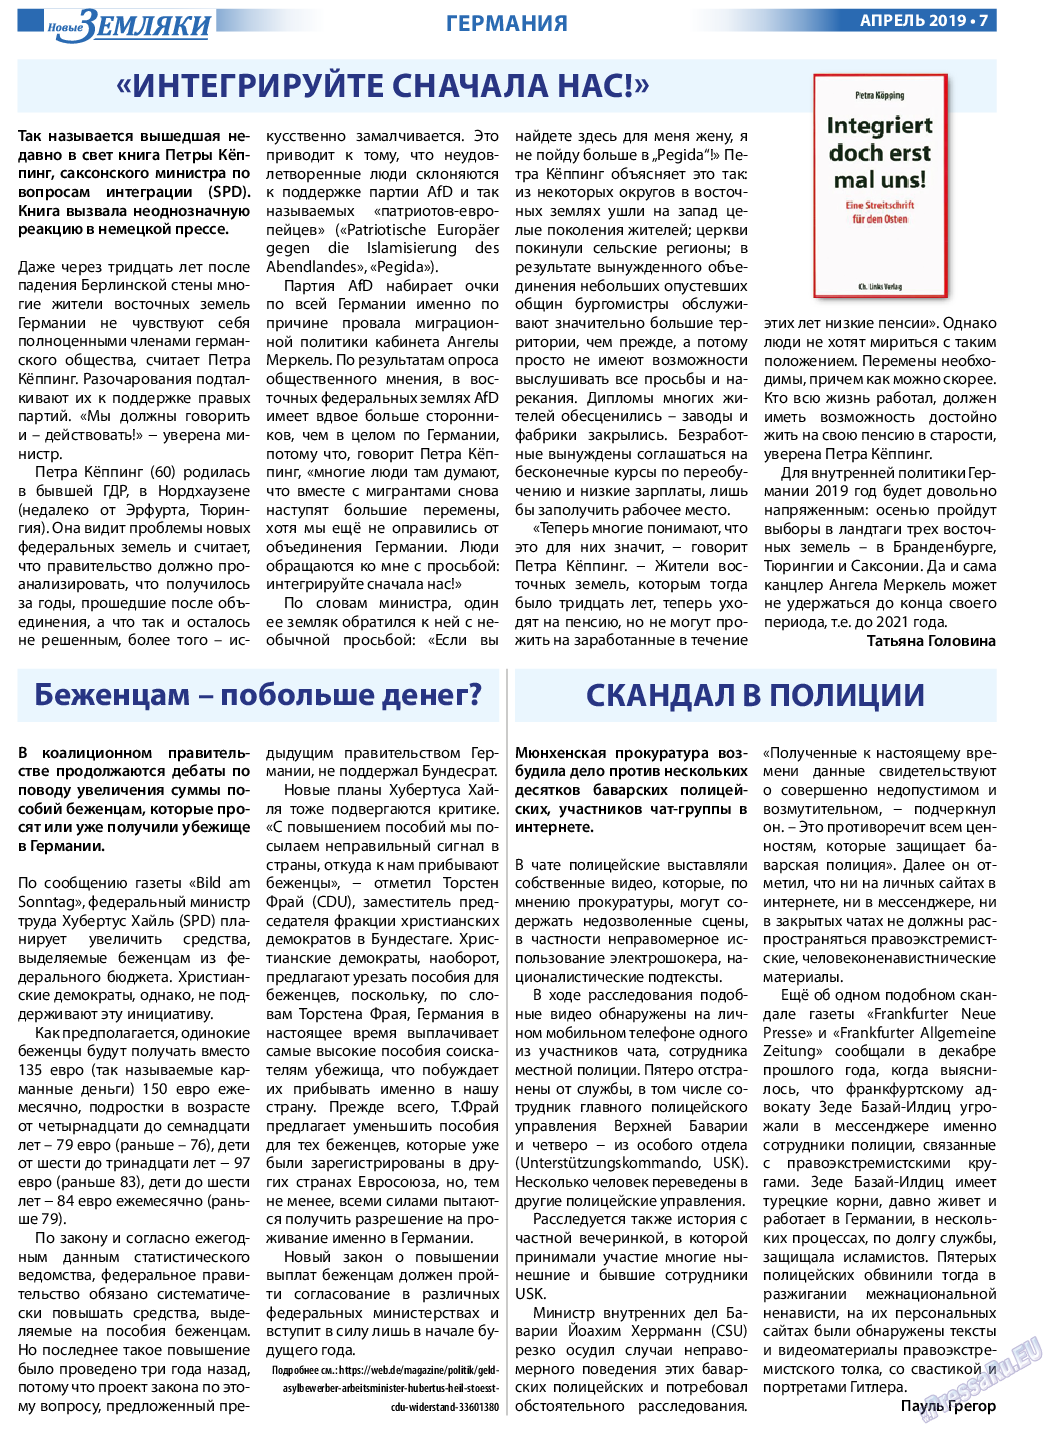 Новые Земляки, газета. 2019 №4 стр.7